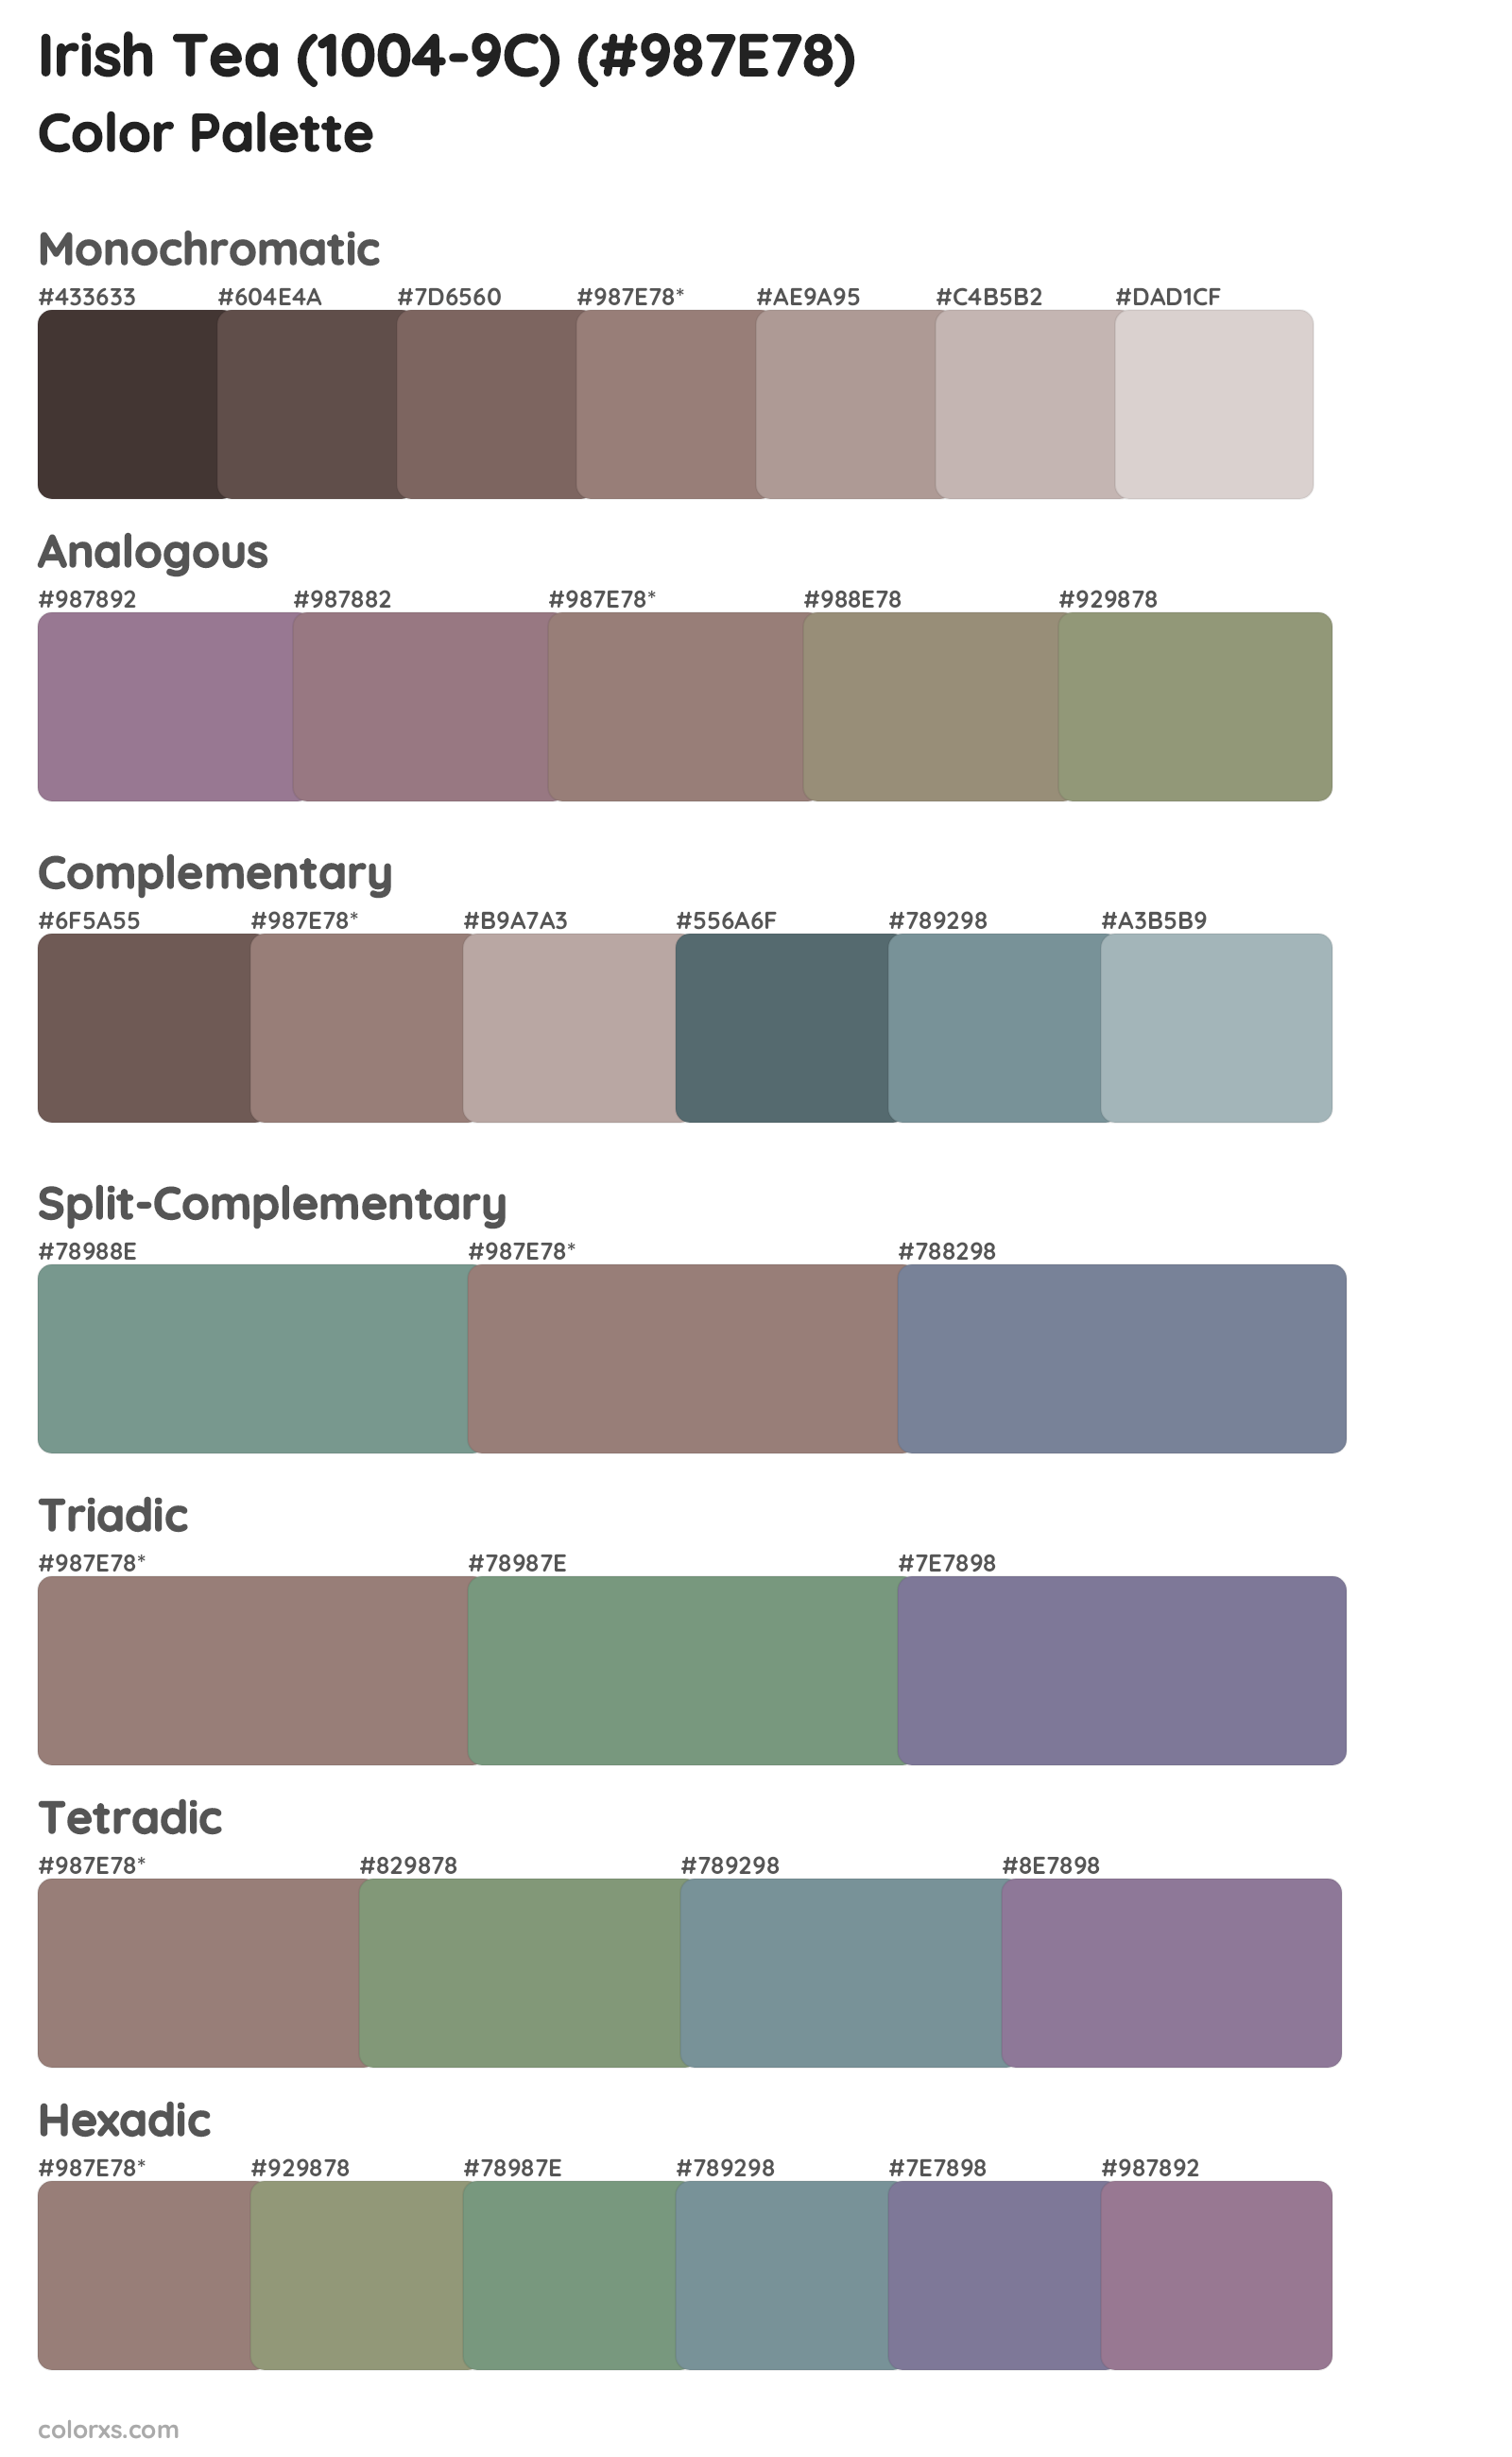 Irish Tea (1004-9C) Color Scheme Palettes